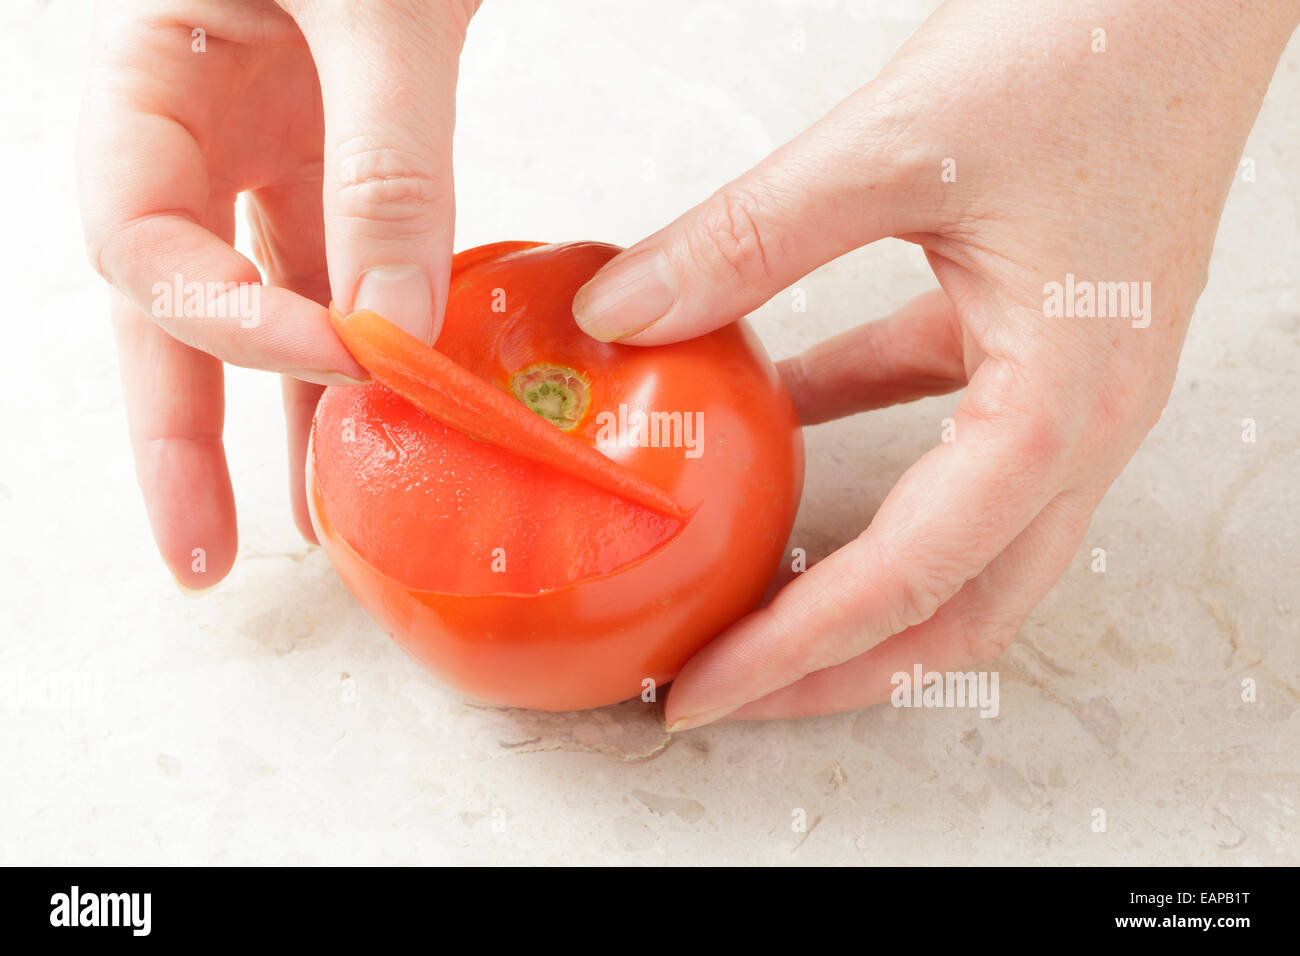 Le mani la rimozione della pelle da un pomodoro Foto Stock